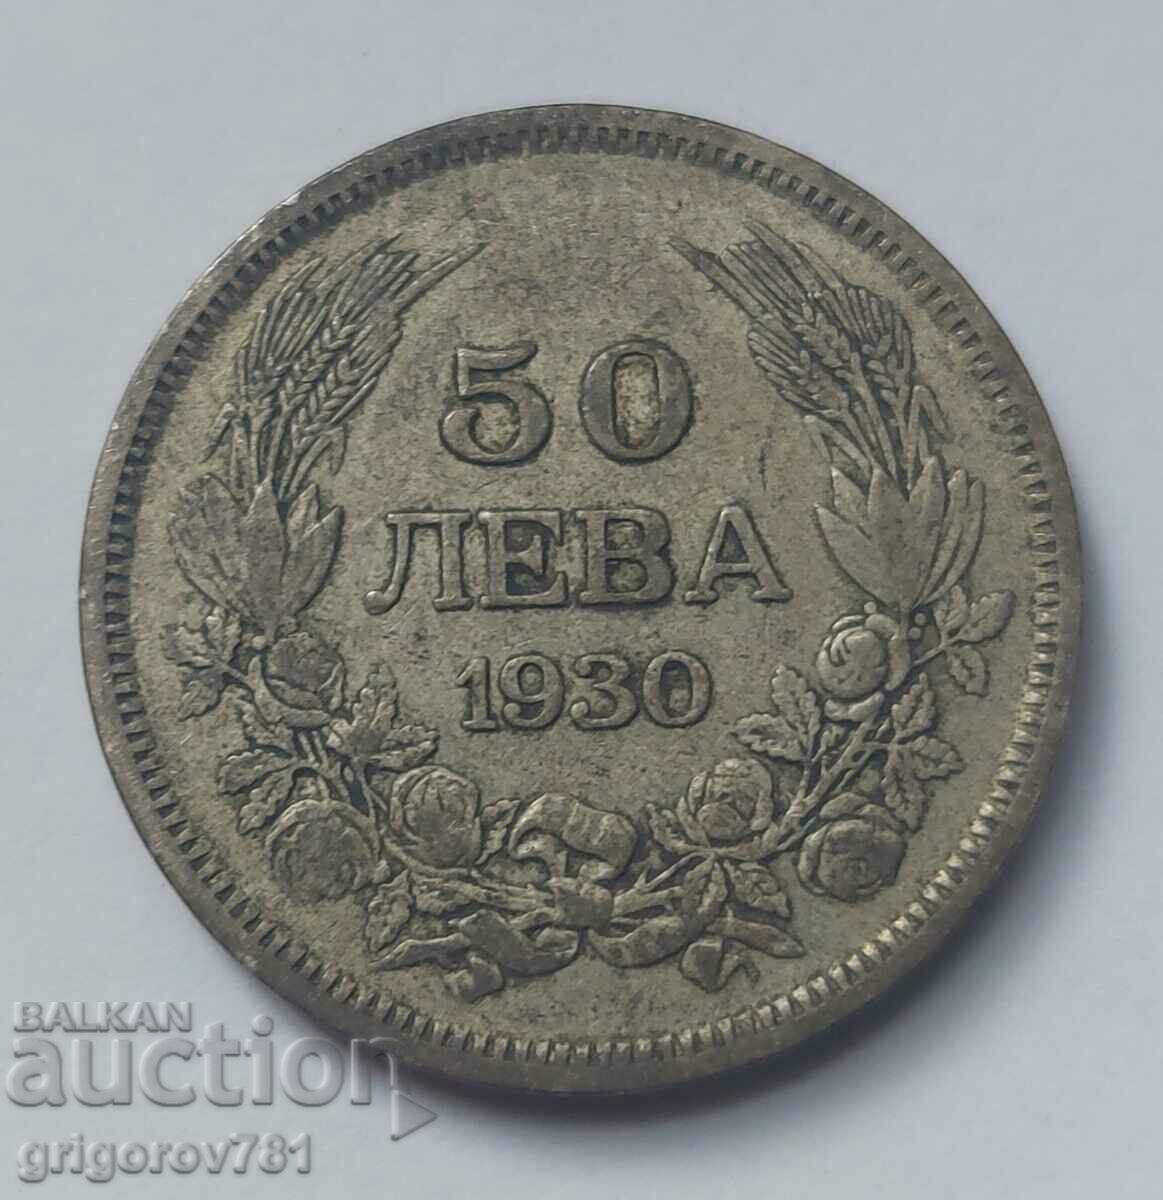 50 leva silver Bulgaria 1930 - silver coin #35